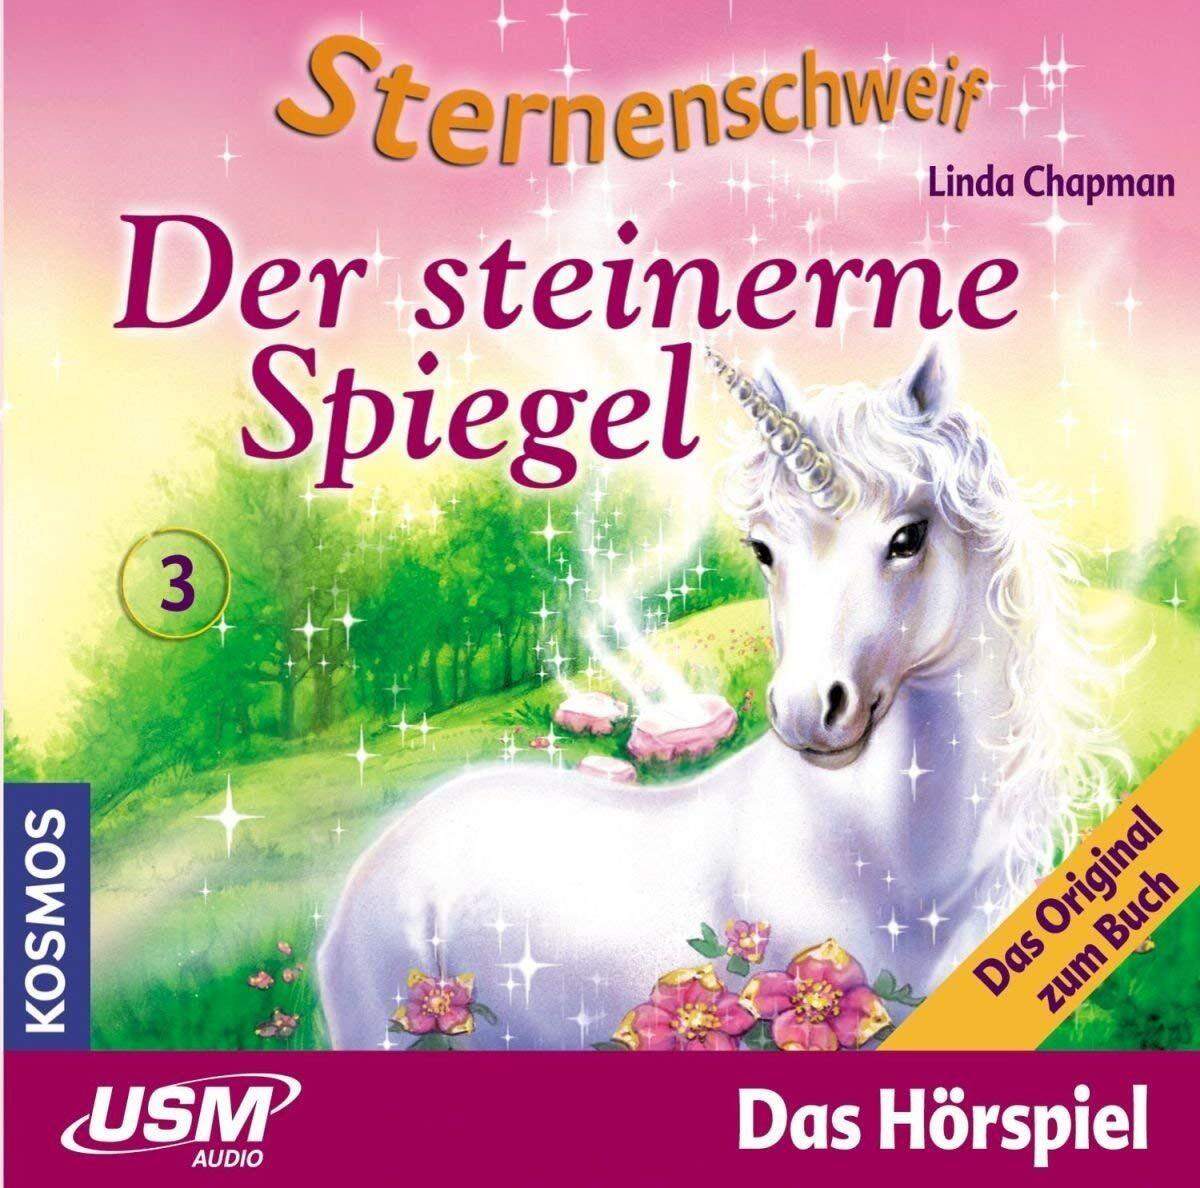 KOSMOS Hörspiel-CD Sternenschweif 3 Der steinerne Spiegel